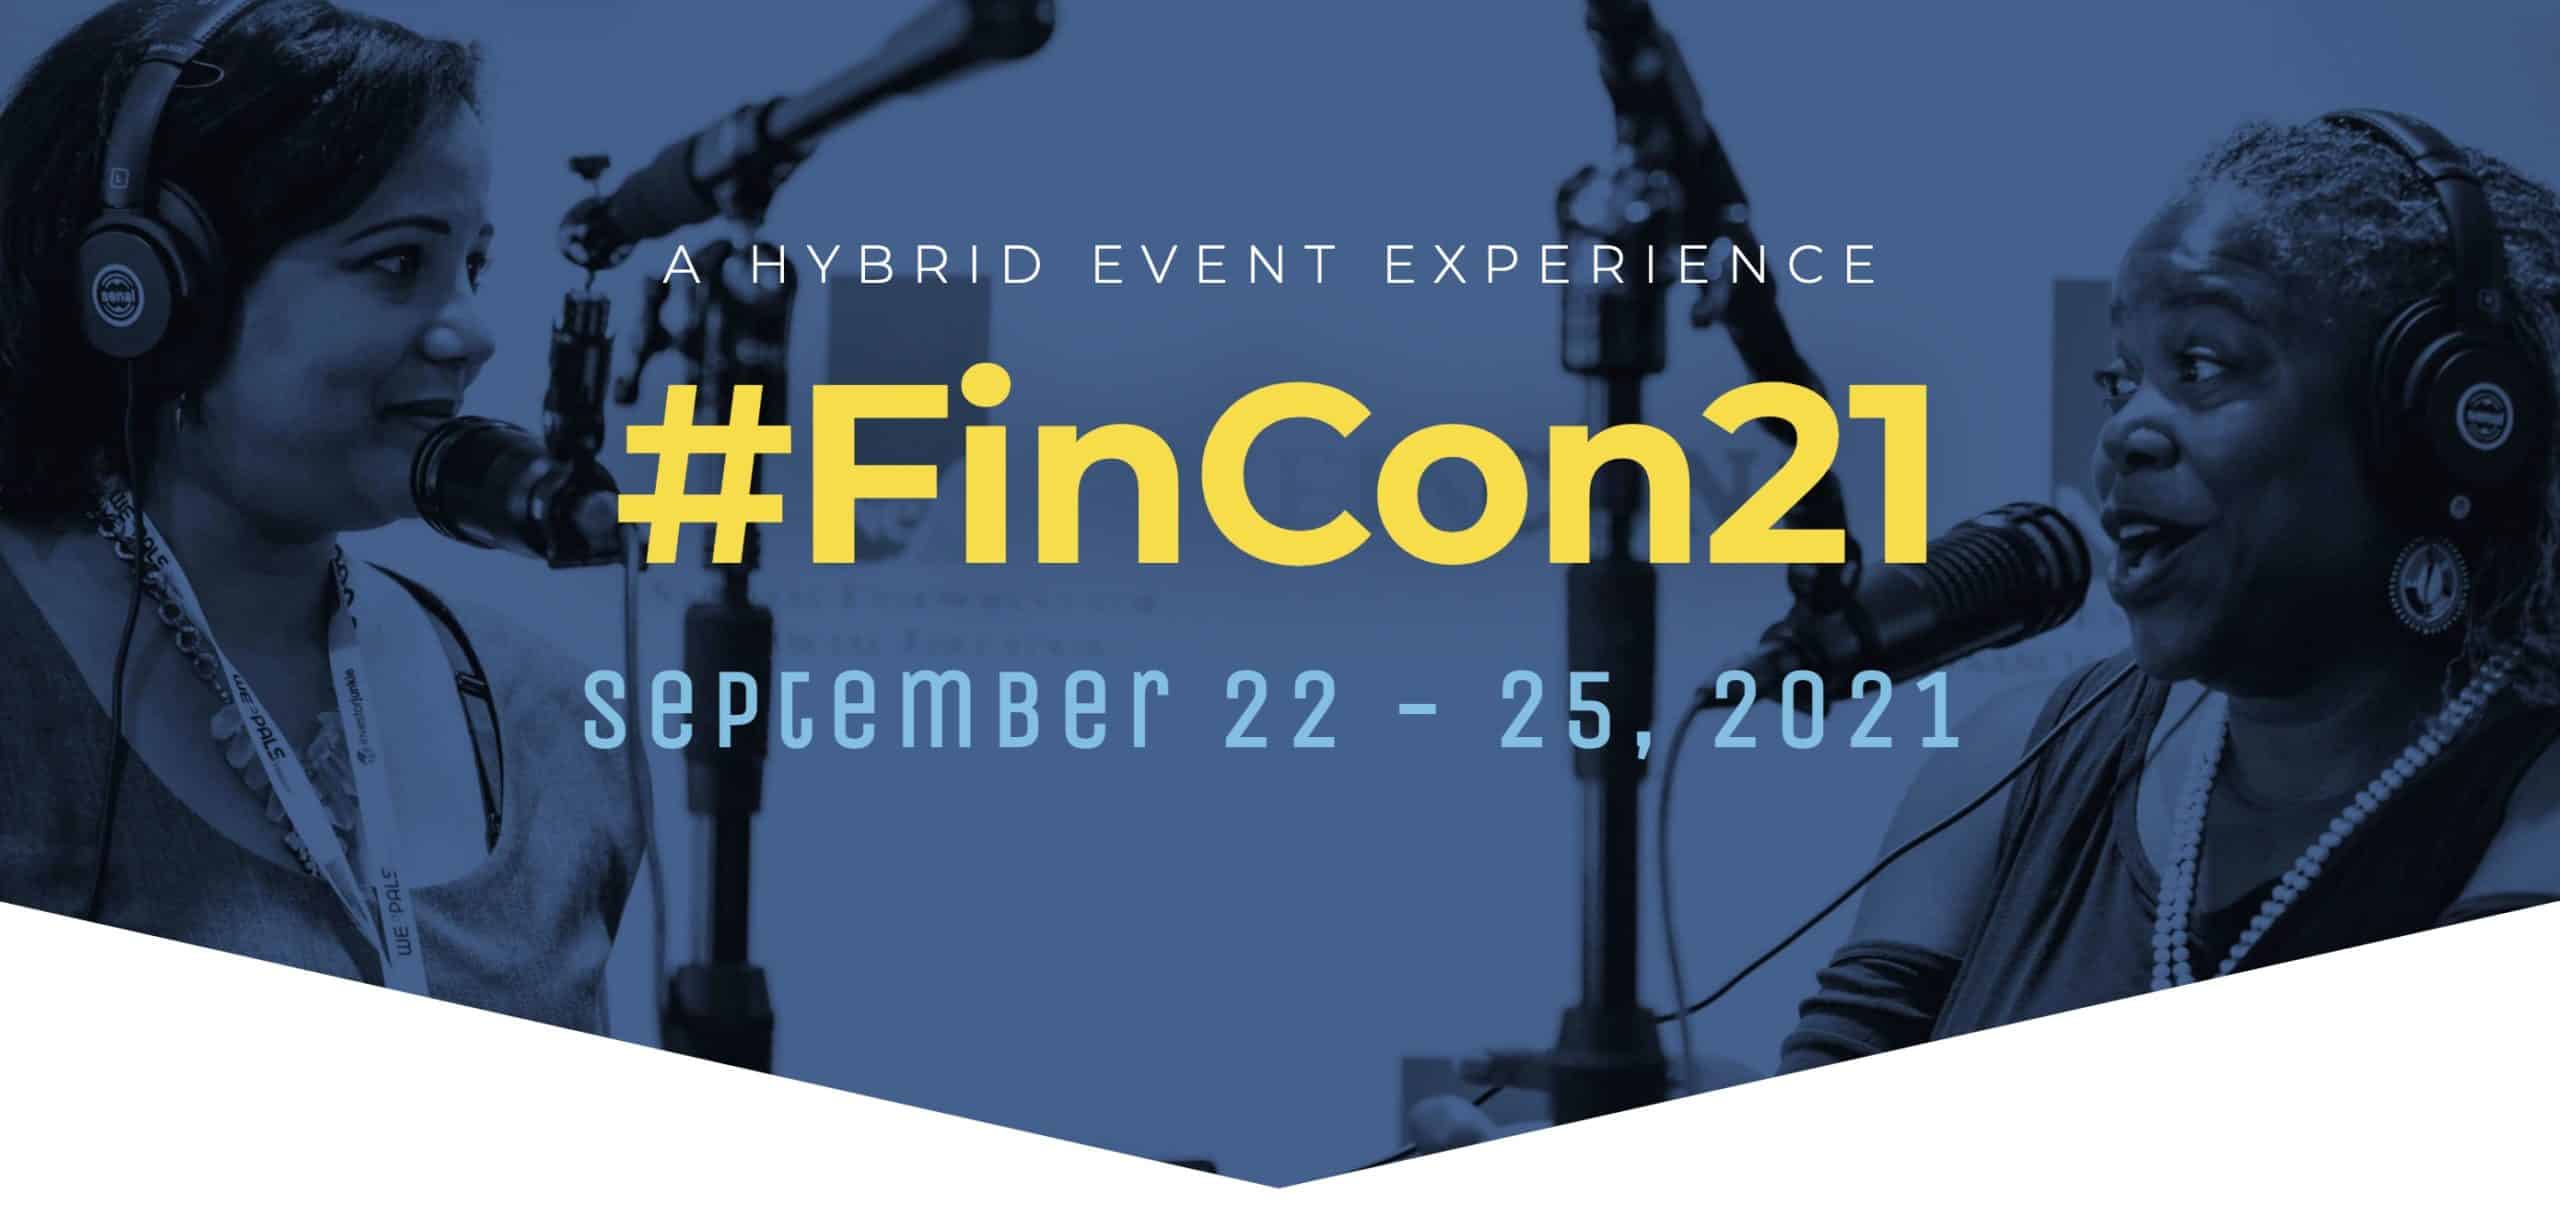 Come See TUNE at FinCon21